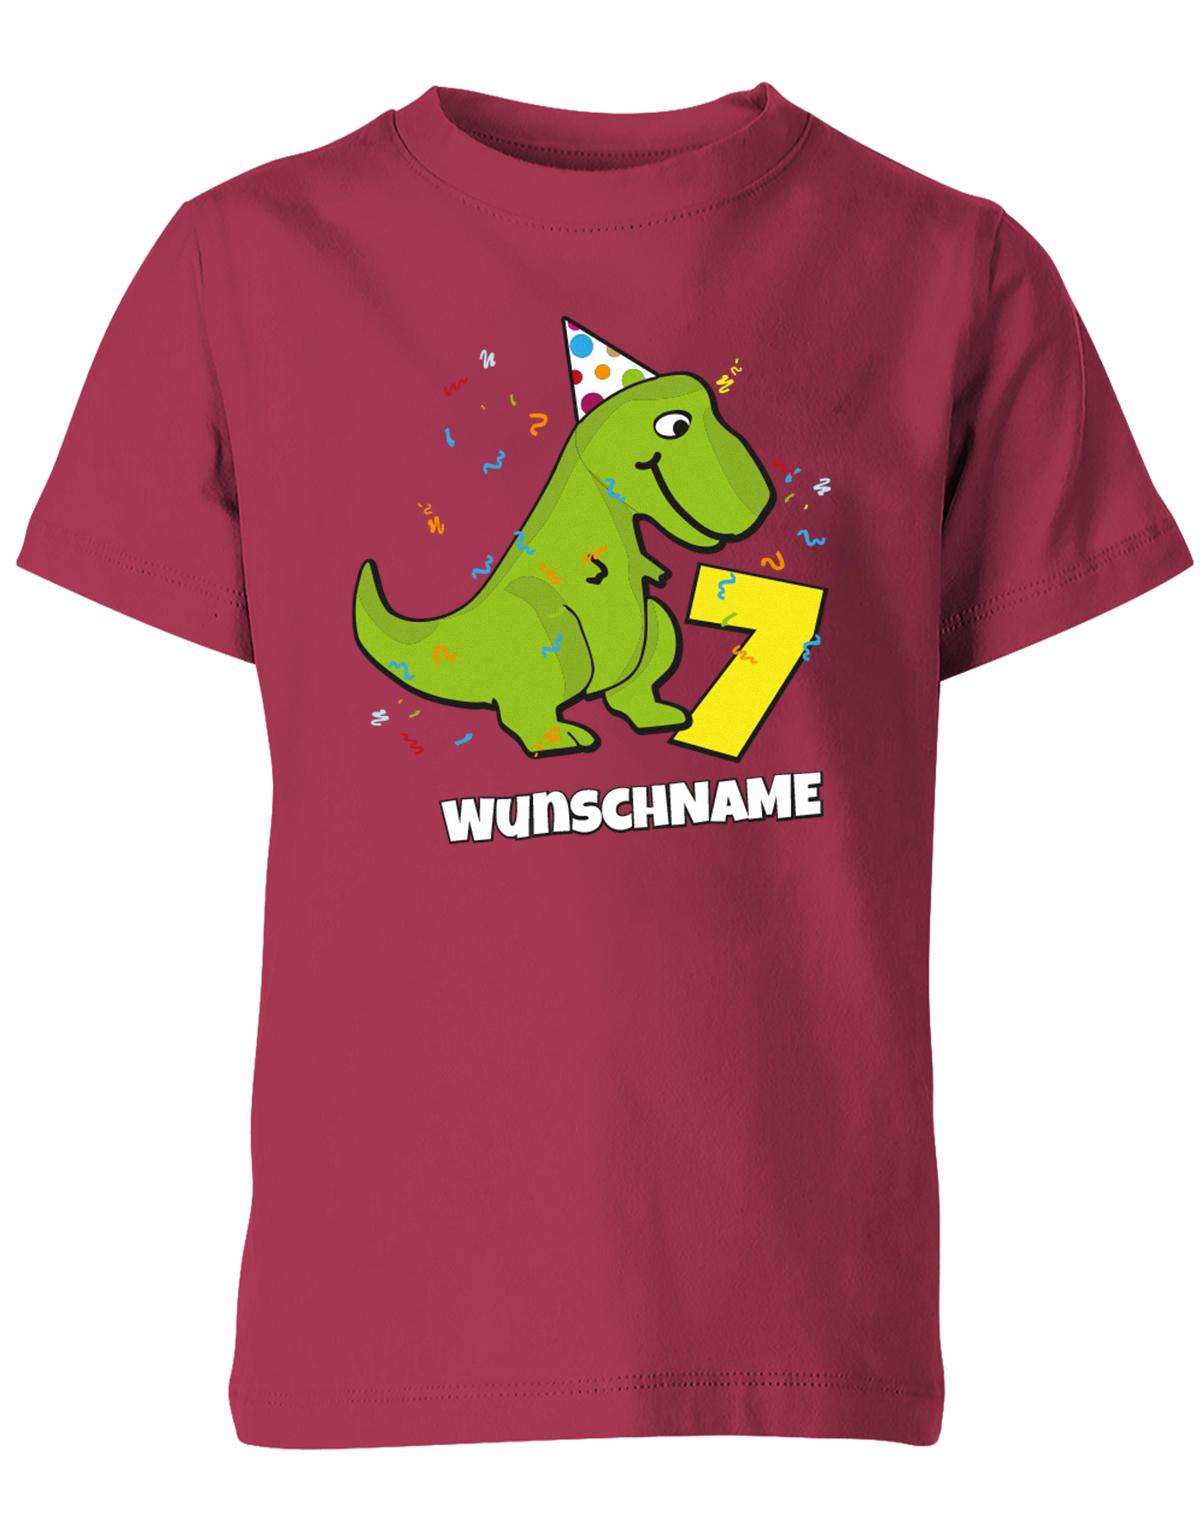 ich-bin-7-Dinosaurier-t-rex-wunschname-geburtstag-kinder-shirt-sorbet